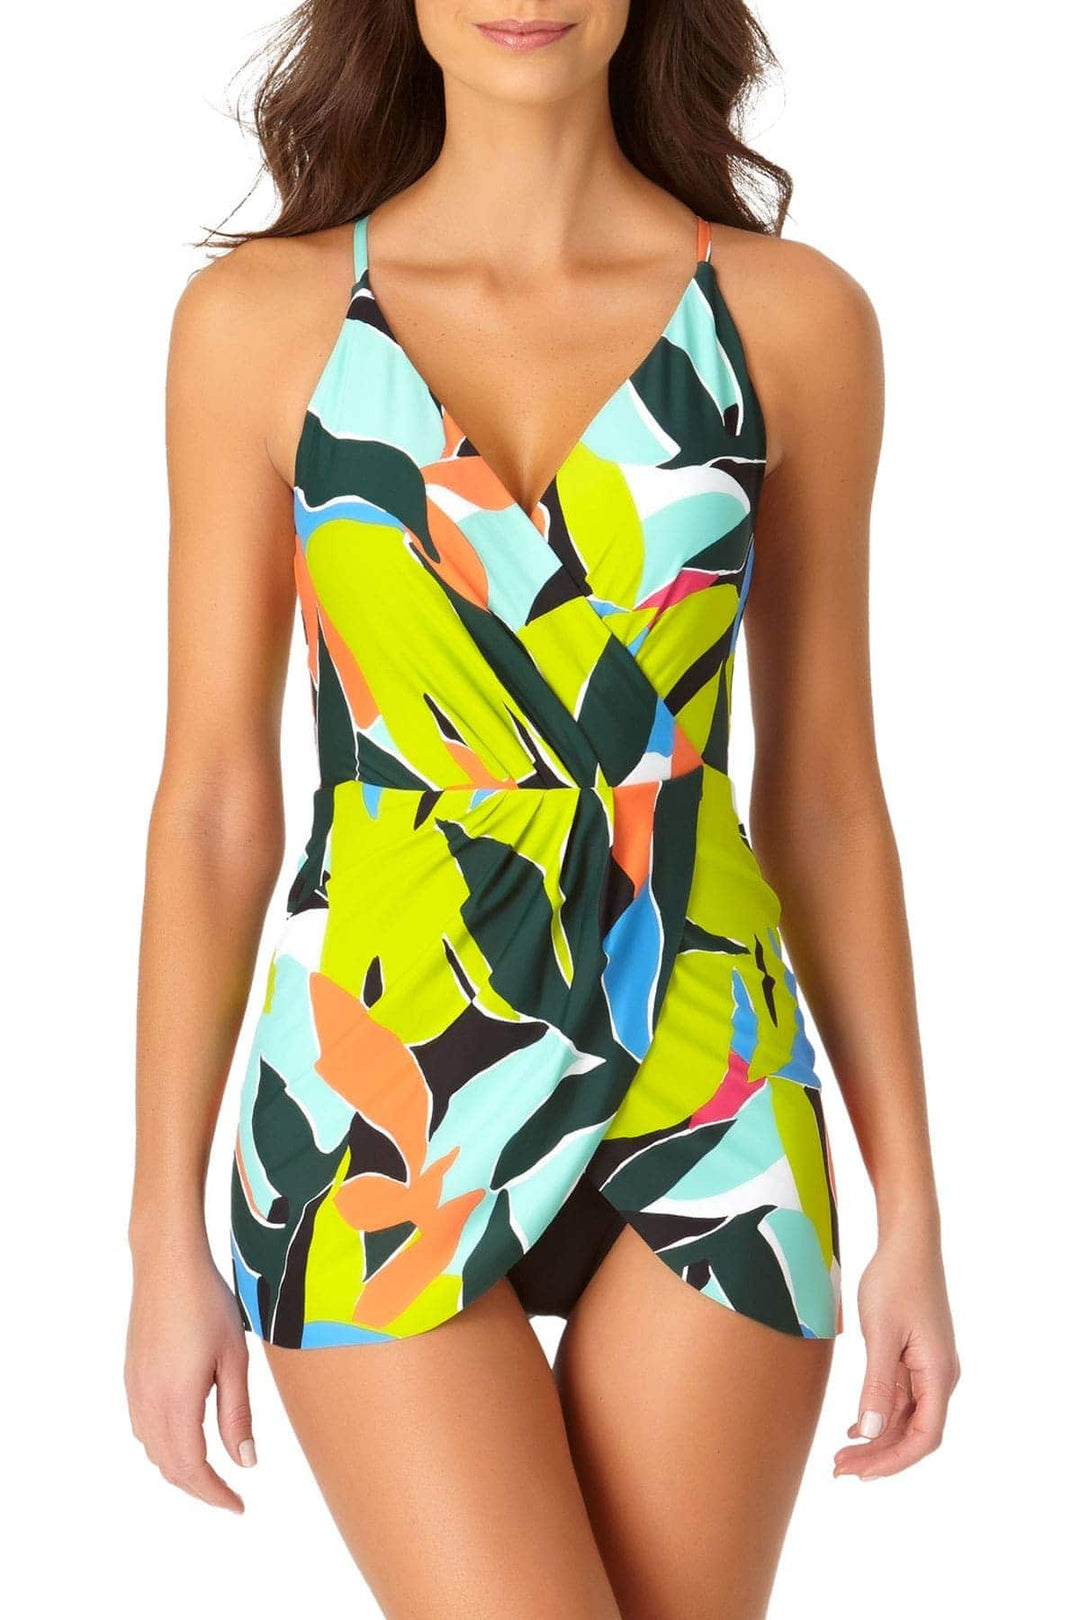 Polynesian Palm Swim Dress With Skirted Bottom - Size 8